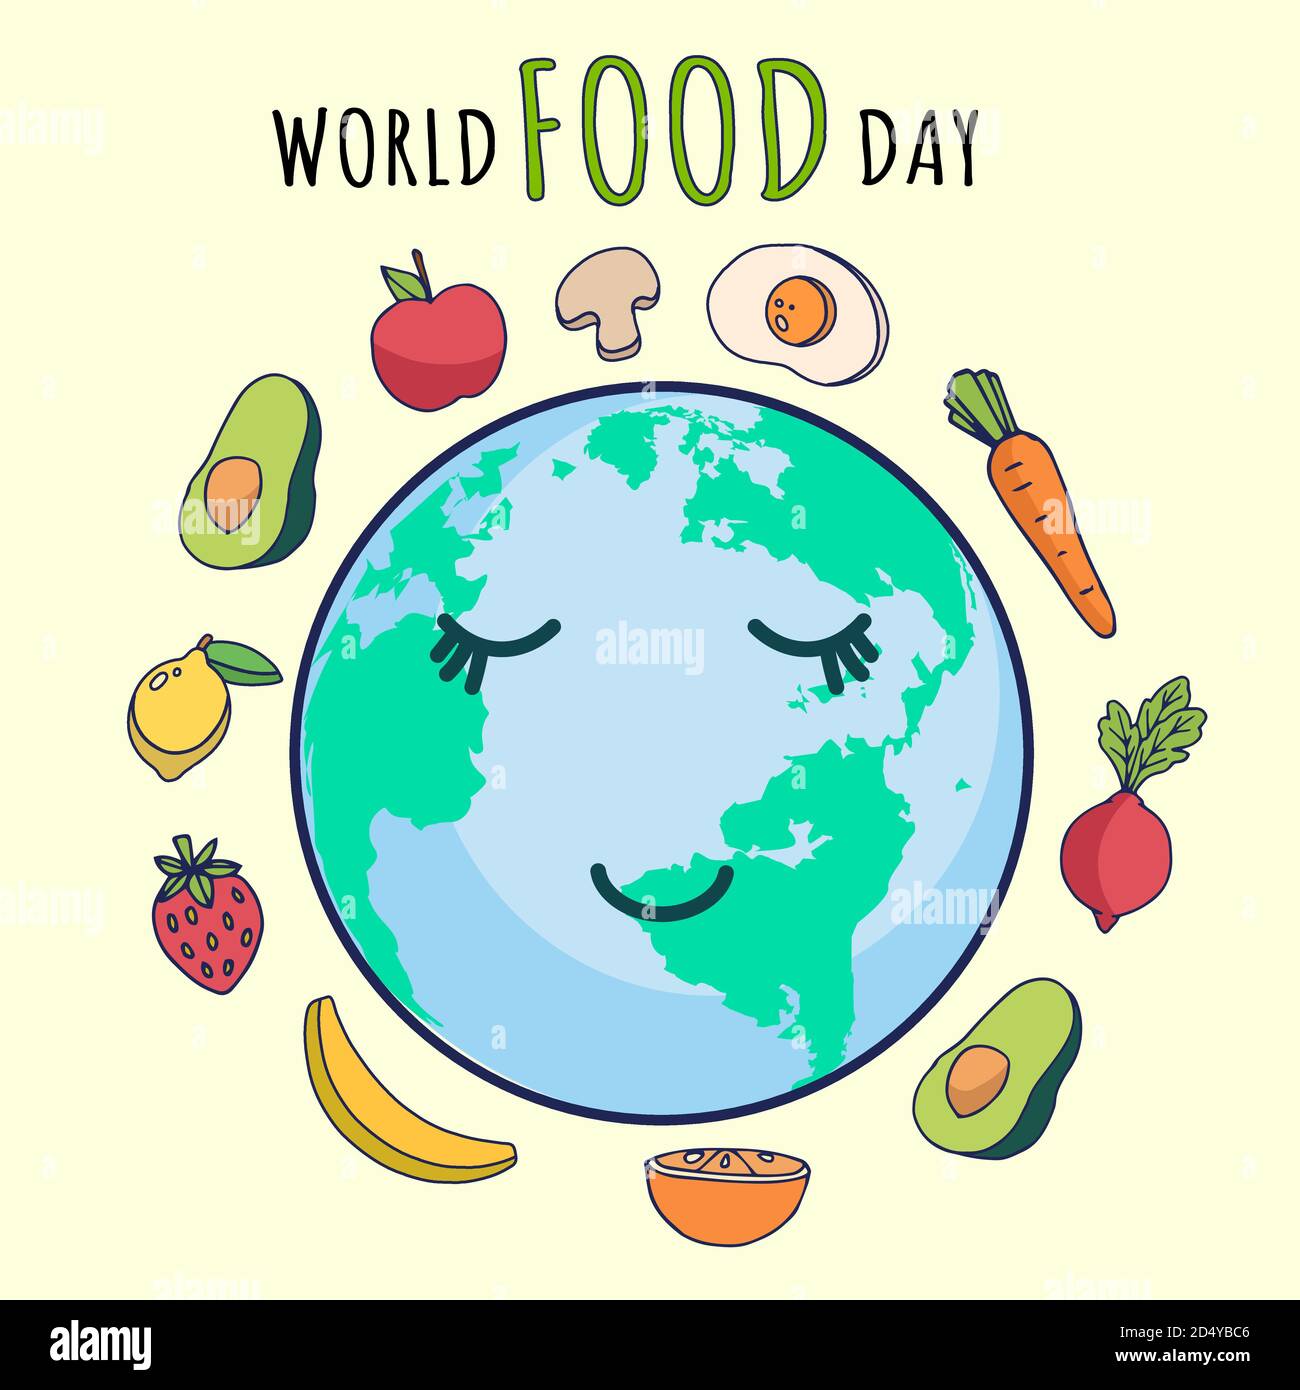 Affiche de bienvenue de la Journée mondiale de l'alimentation, vecteur d'illustration des fruits et légumes Illustration de Vecteur